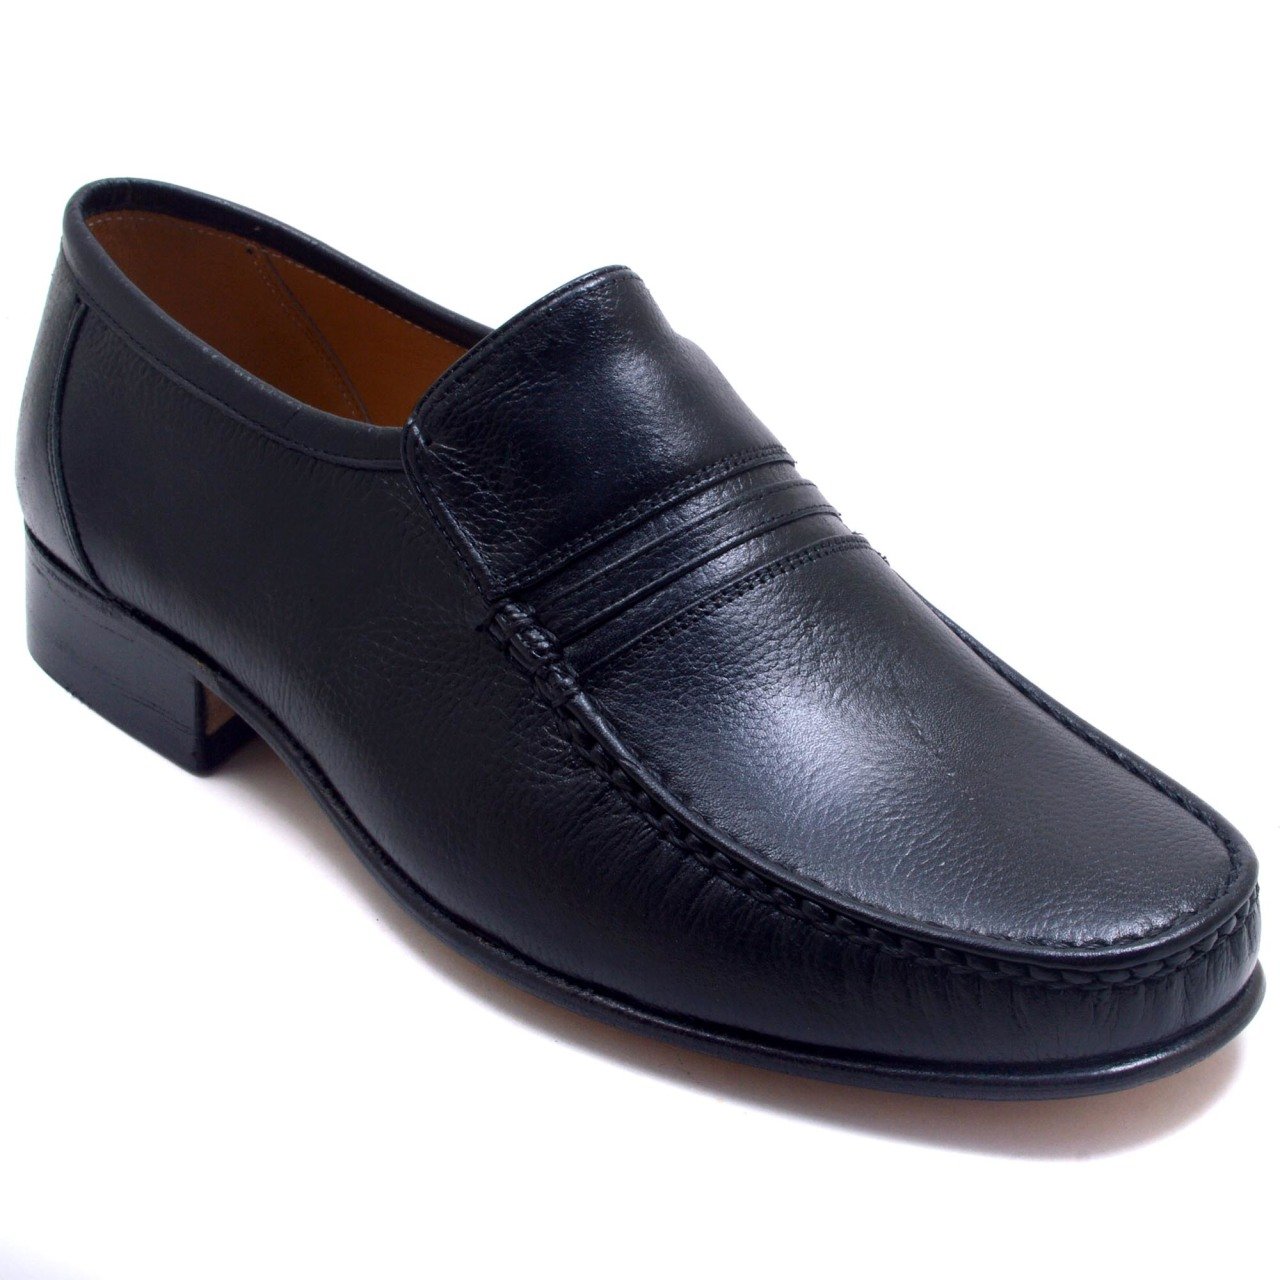 680-DR Jurdan Erkek Deri Ayakkabı - Siyah